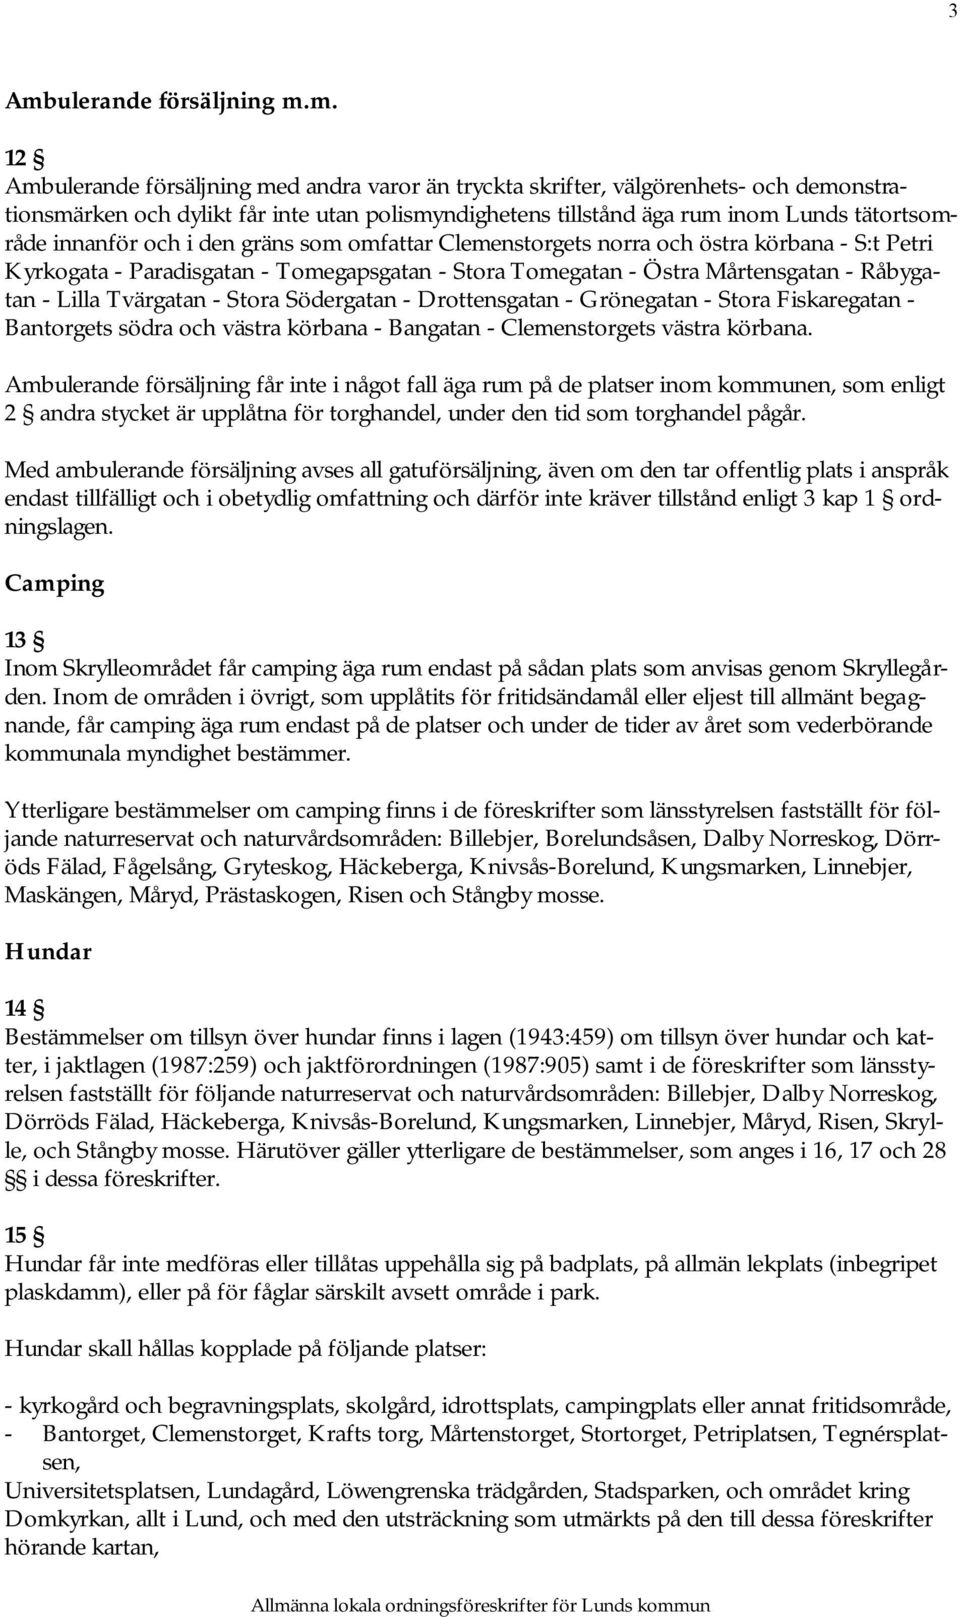 Råbygatan - Lilla Tvärgatan - Stora Södergatan - Drottensgatan - Grönegatan - Stora Fiskaregatan - Bantorgets södra och västra körbana - Bangatan - Clemenstorgets västra körbana.